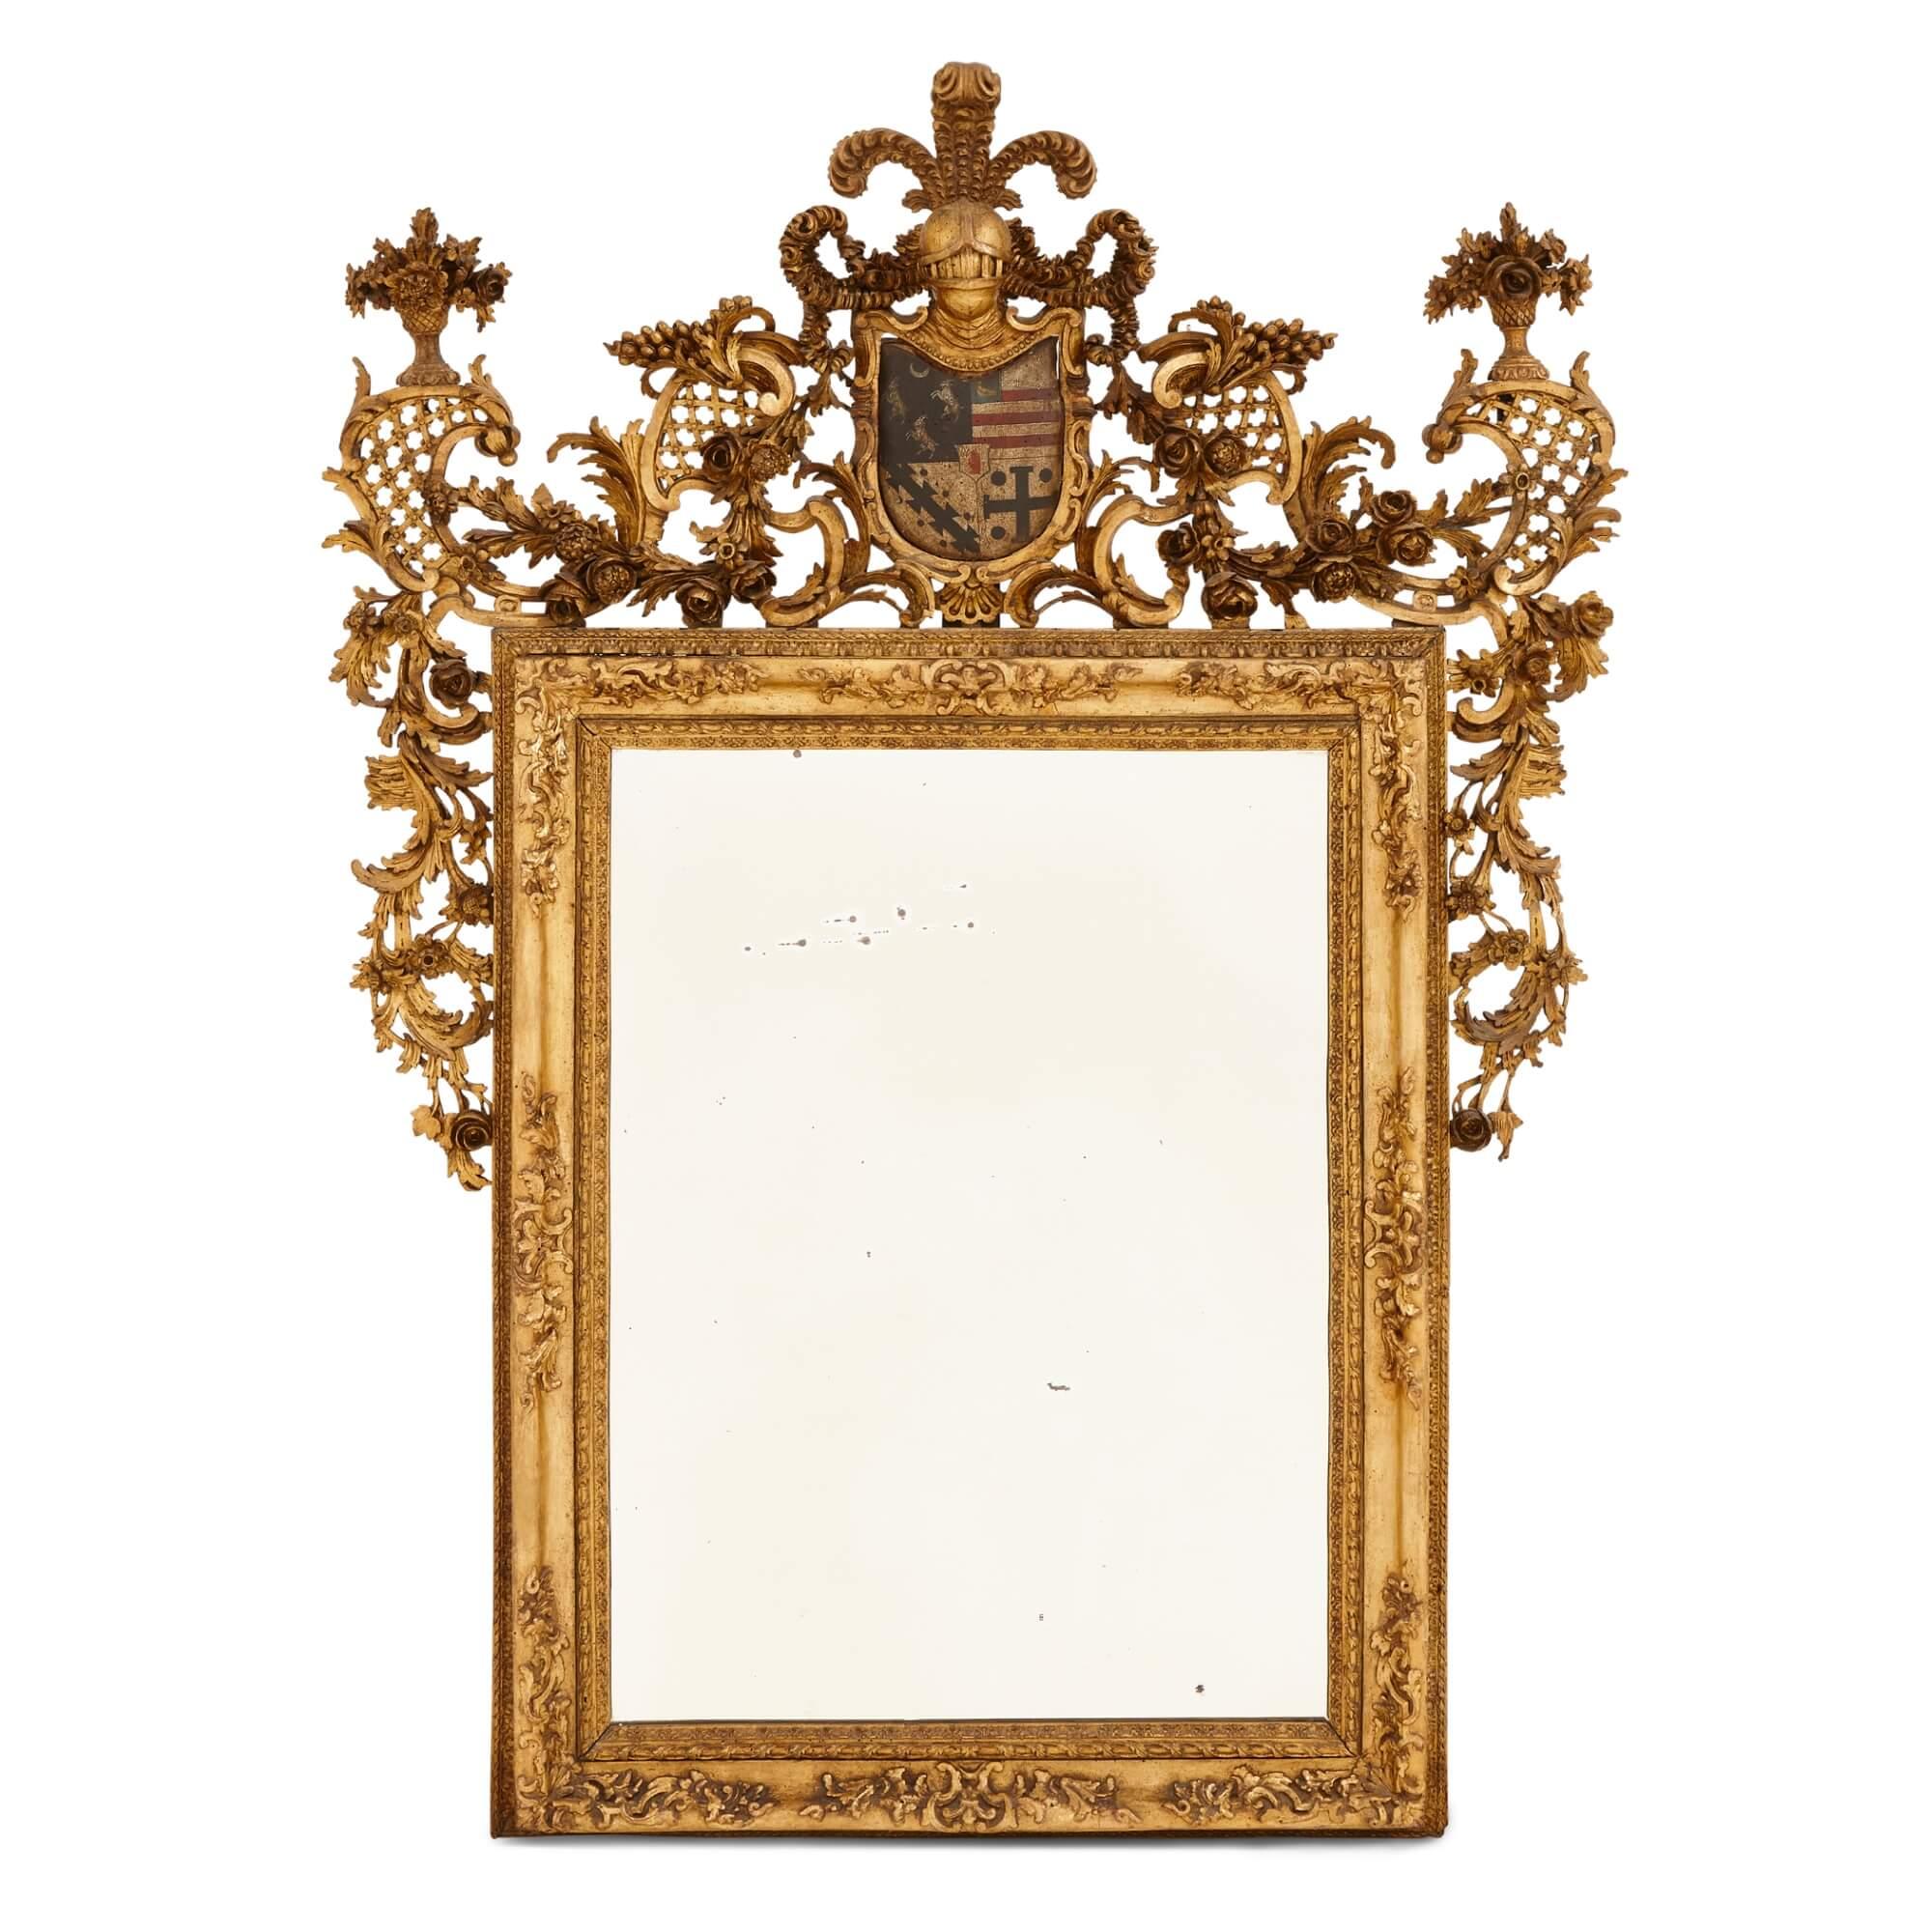 Paire de miroirs italiens anciens en bois doré et décorés de polychromie
Italie, milieu du XVIIIe siècle
Hauteur 154 cm, largeur 115 cm, profondeur 8 cm

Datant de l'Italie du milieu du XVIIIe siècle, ces miroirs exceptionnels et rares sont